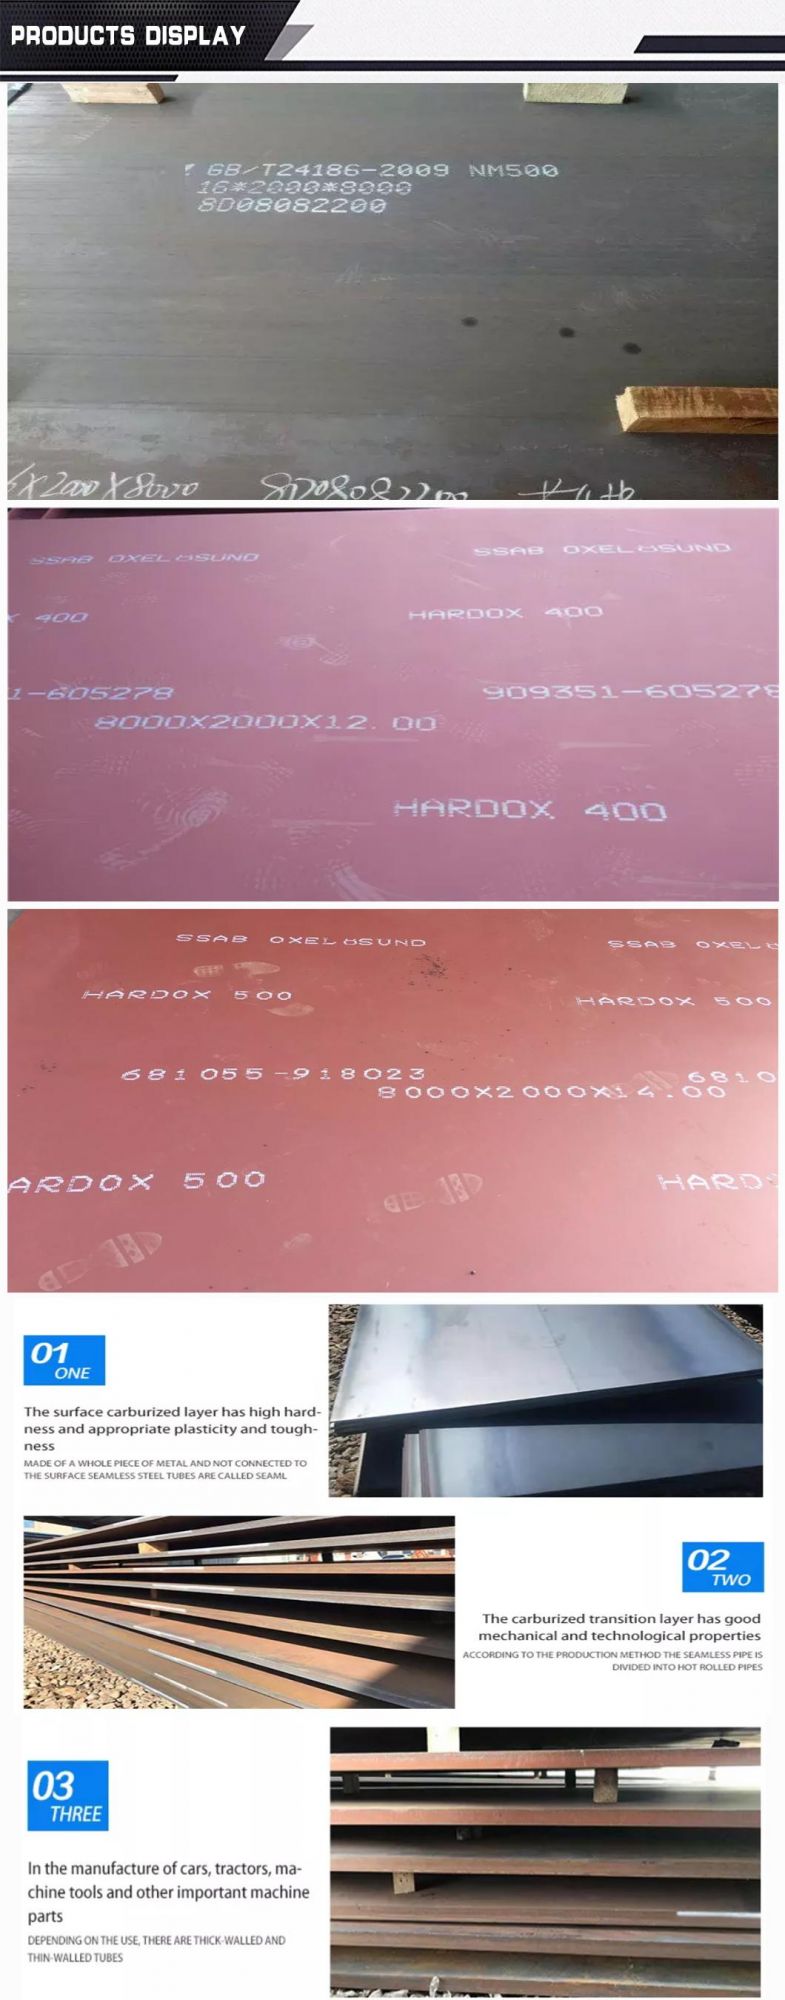 Hardoxs 450 550 500 600 Wear Resistant Steel From Swedish Steel Plate